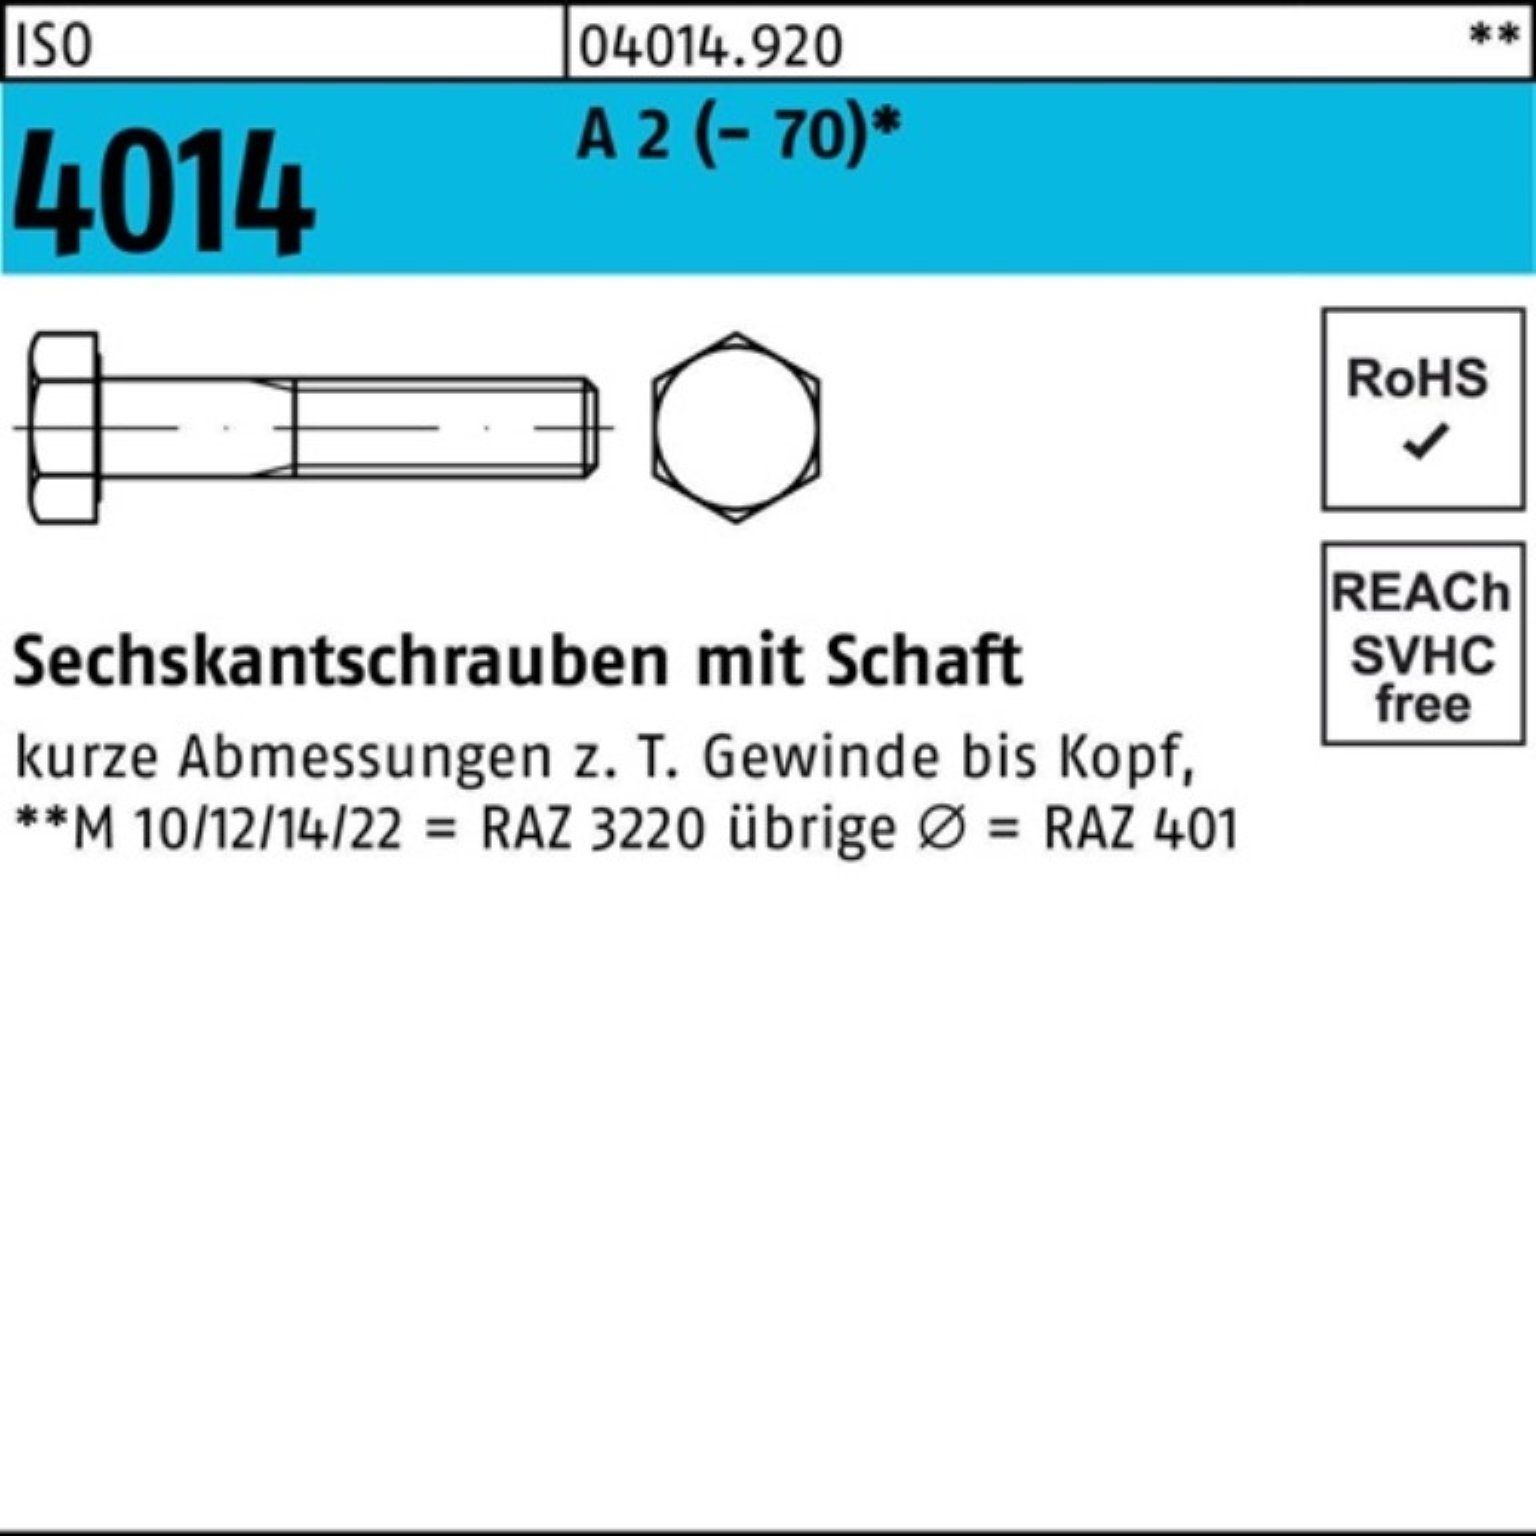 Bufab Sechskantschraube 100er Pack Sechskantschraube ISO 4014 Schaft M18x 150 A 2 (70) 25 St